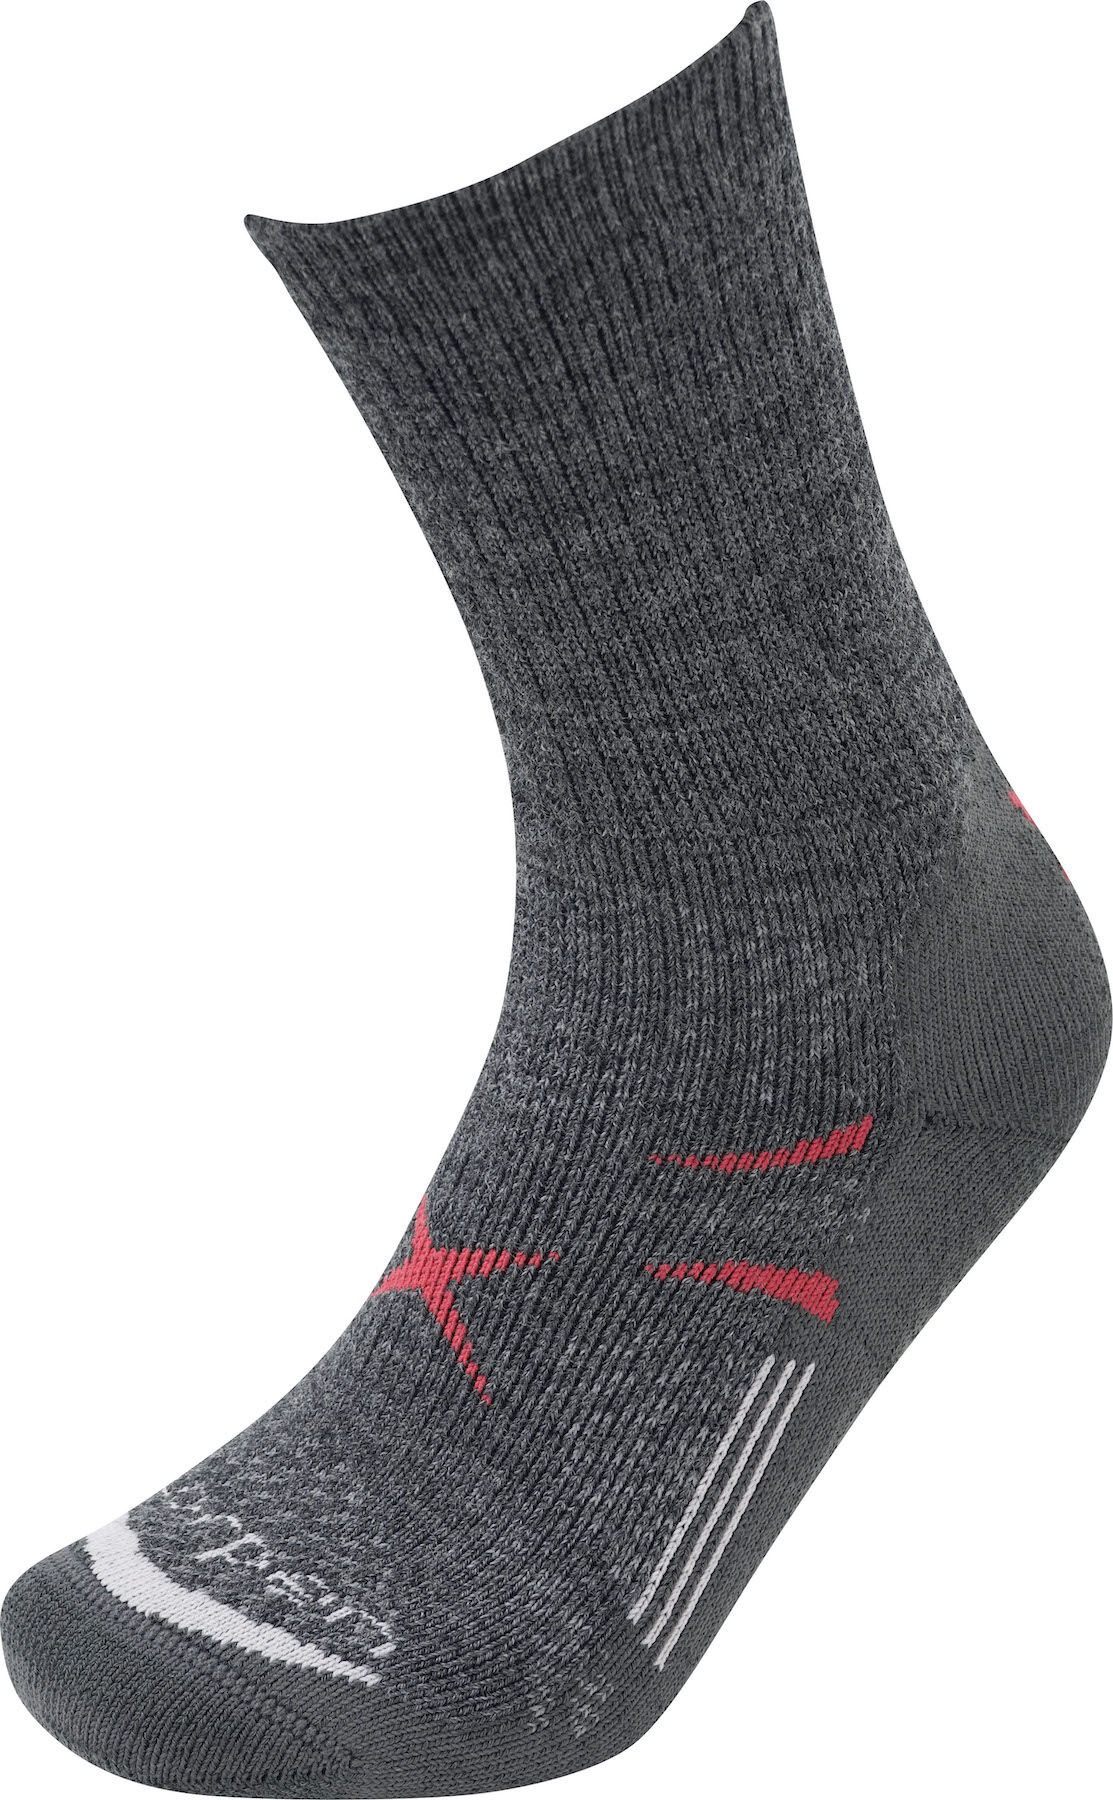 Lorpen - T3 Midweight Hiker - Walking socks - Men's